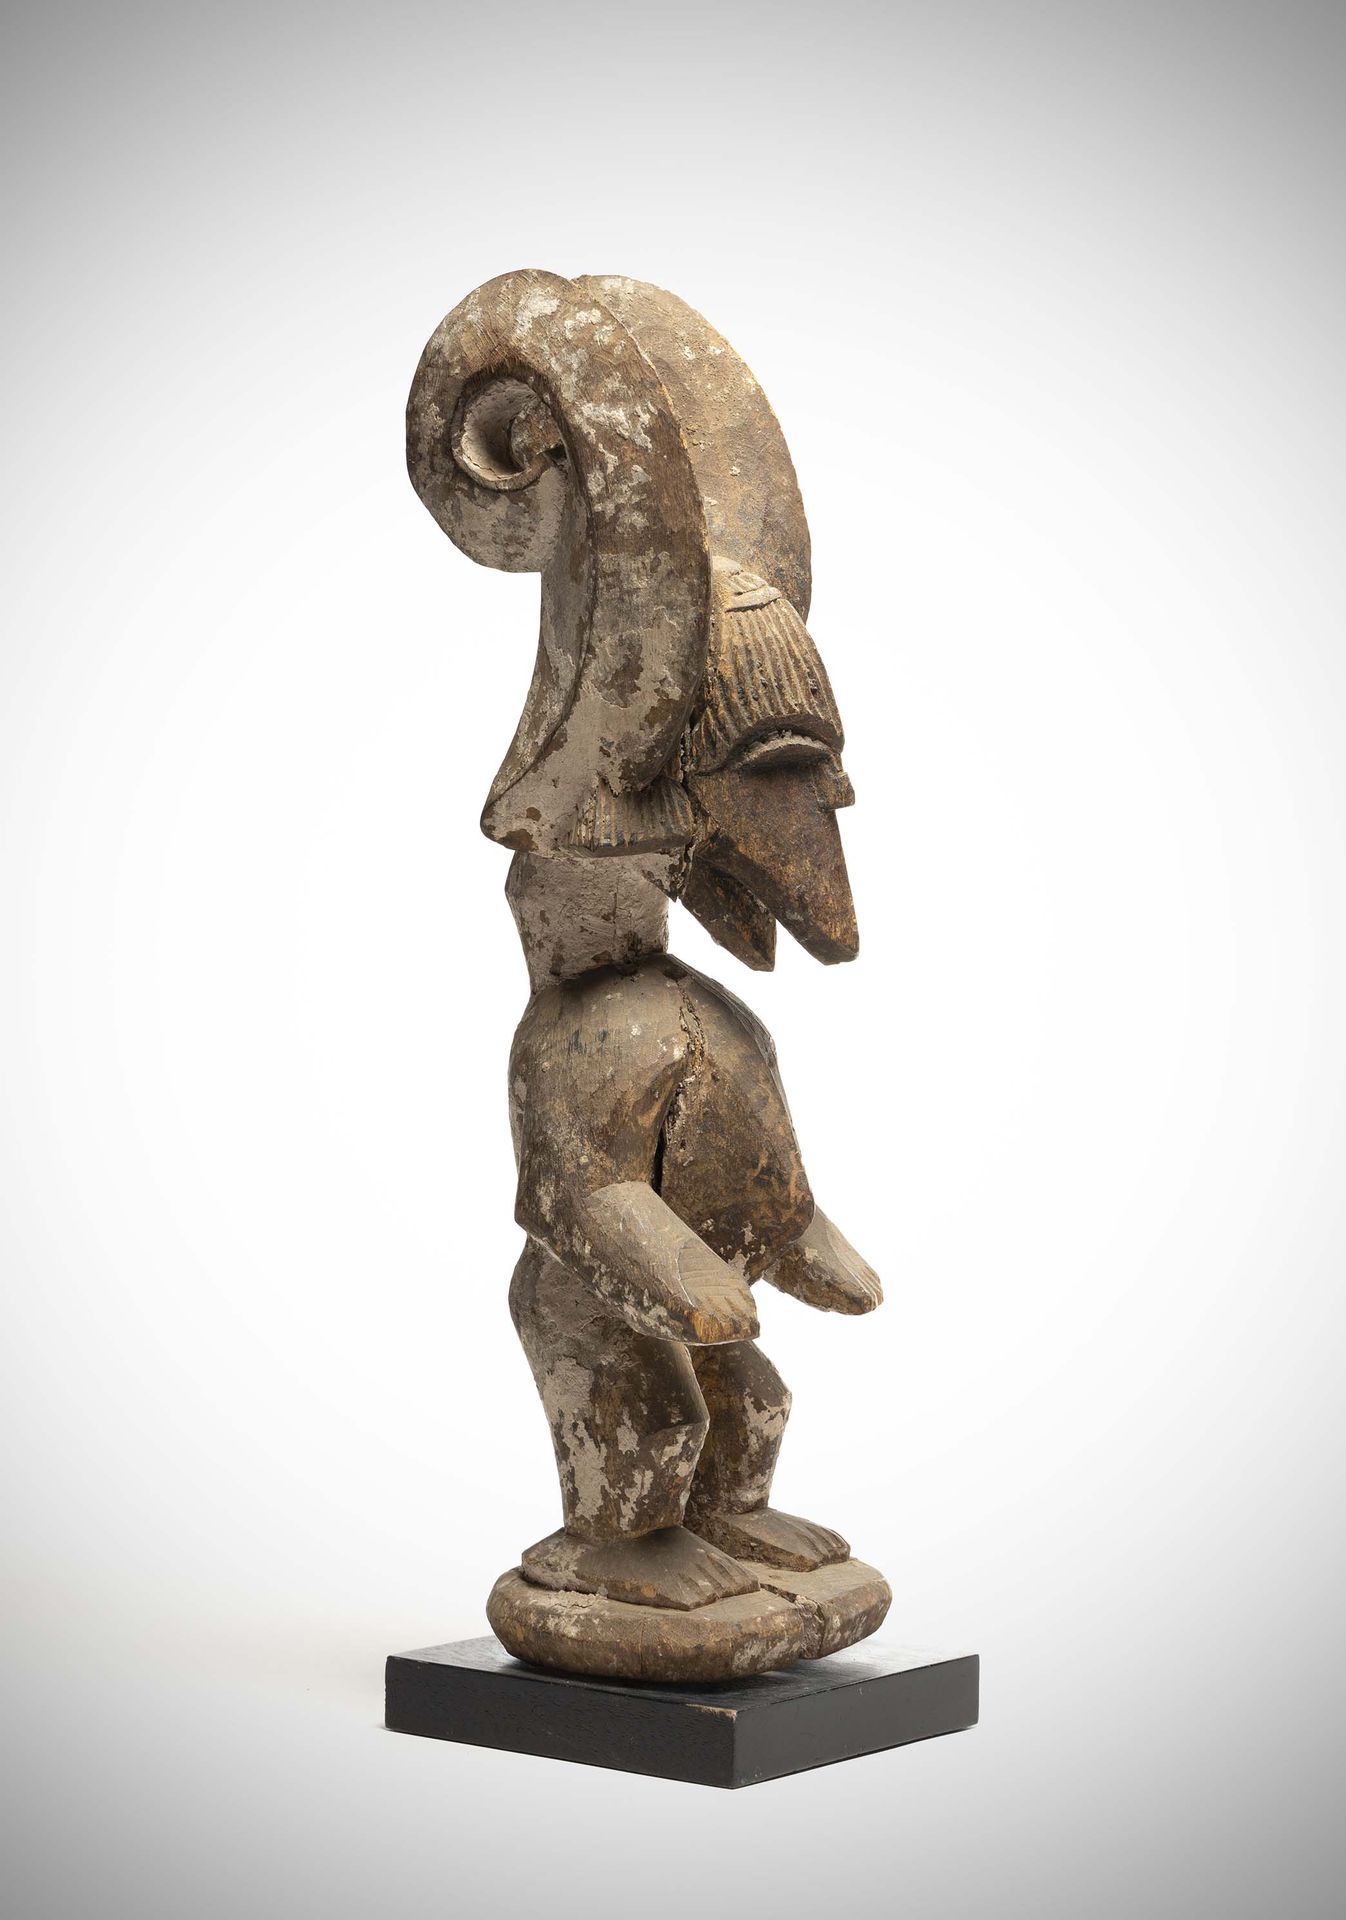 Null Ibo

(Nigeria) Statua antropo-zoomorfa del culto "Ikenga" che rappresenta u&hellip;